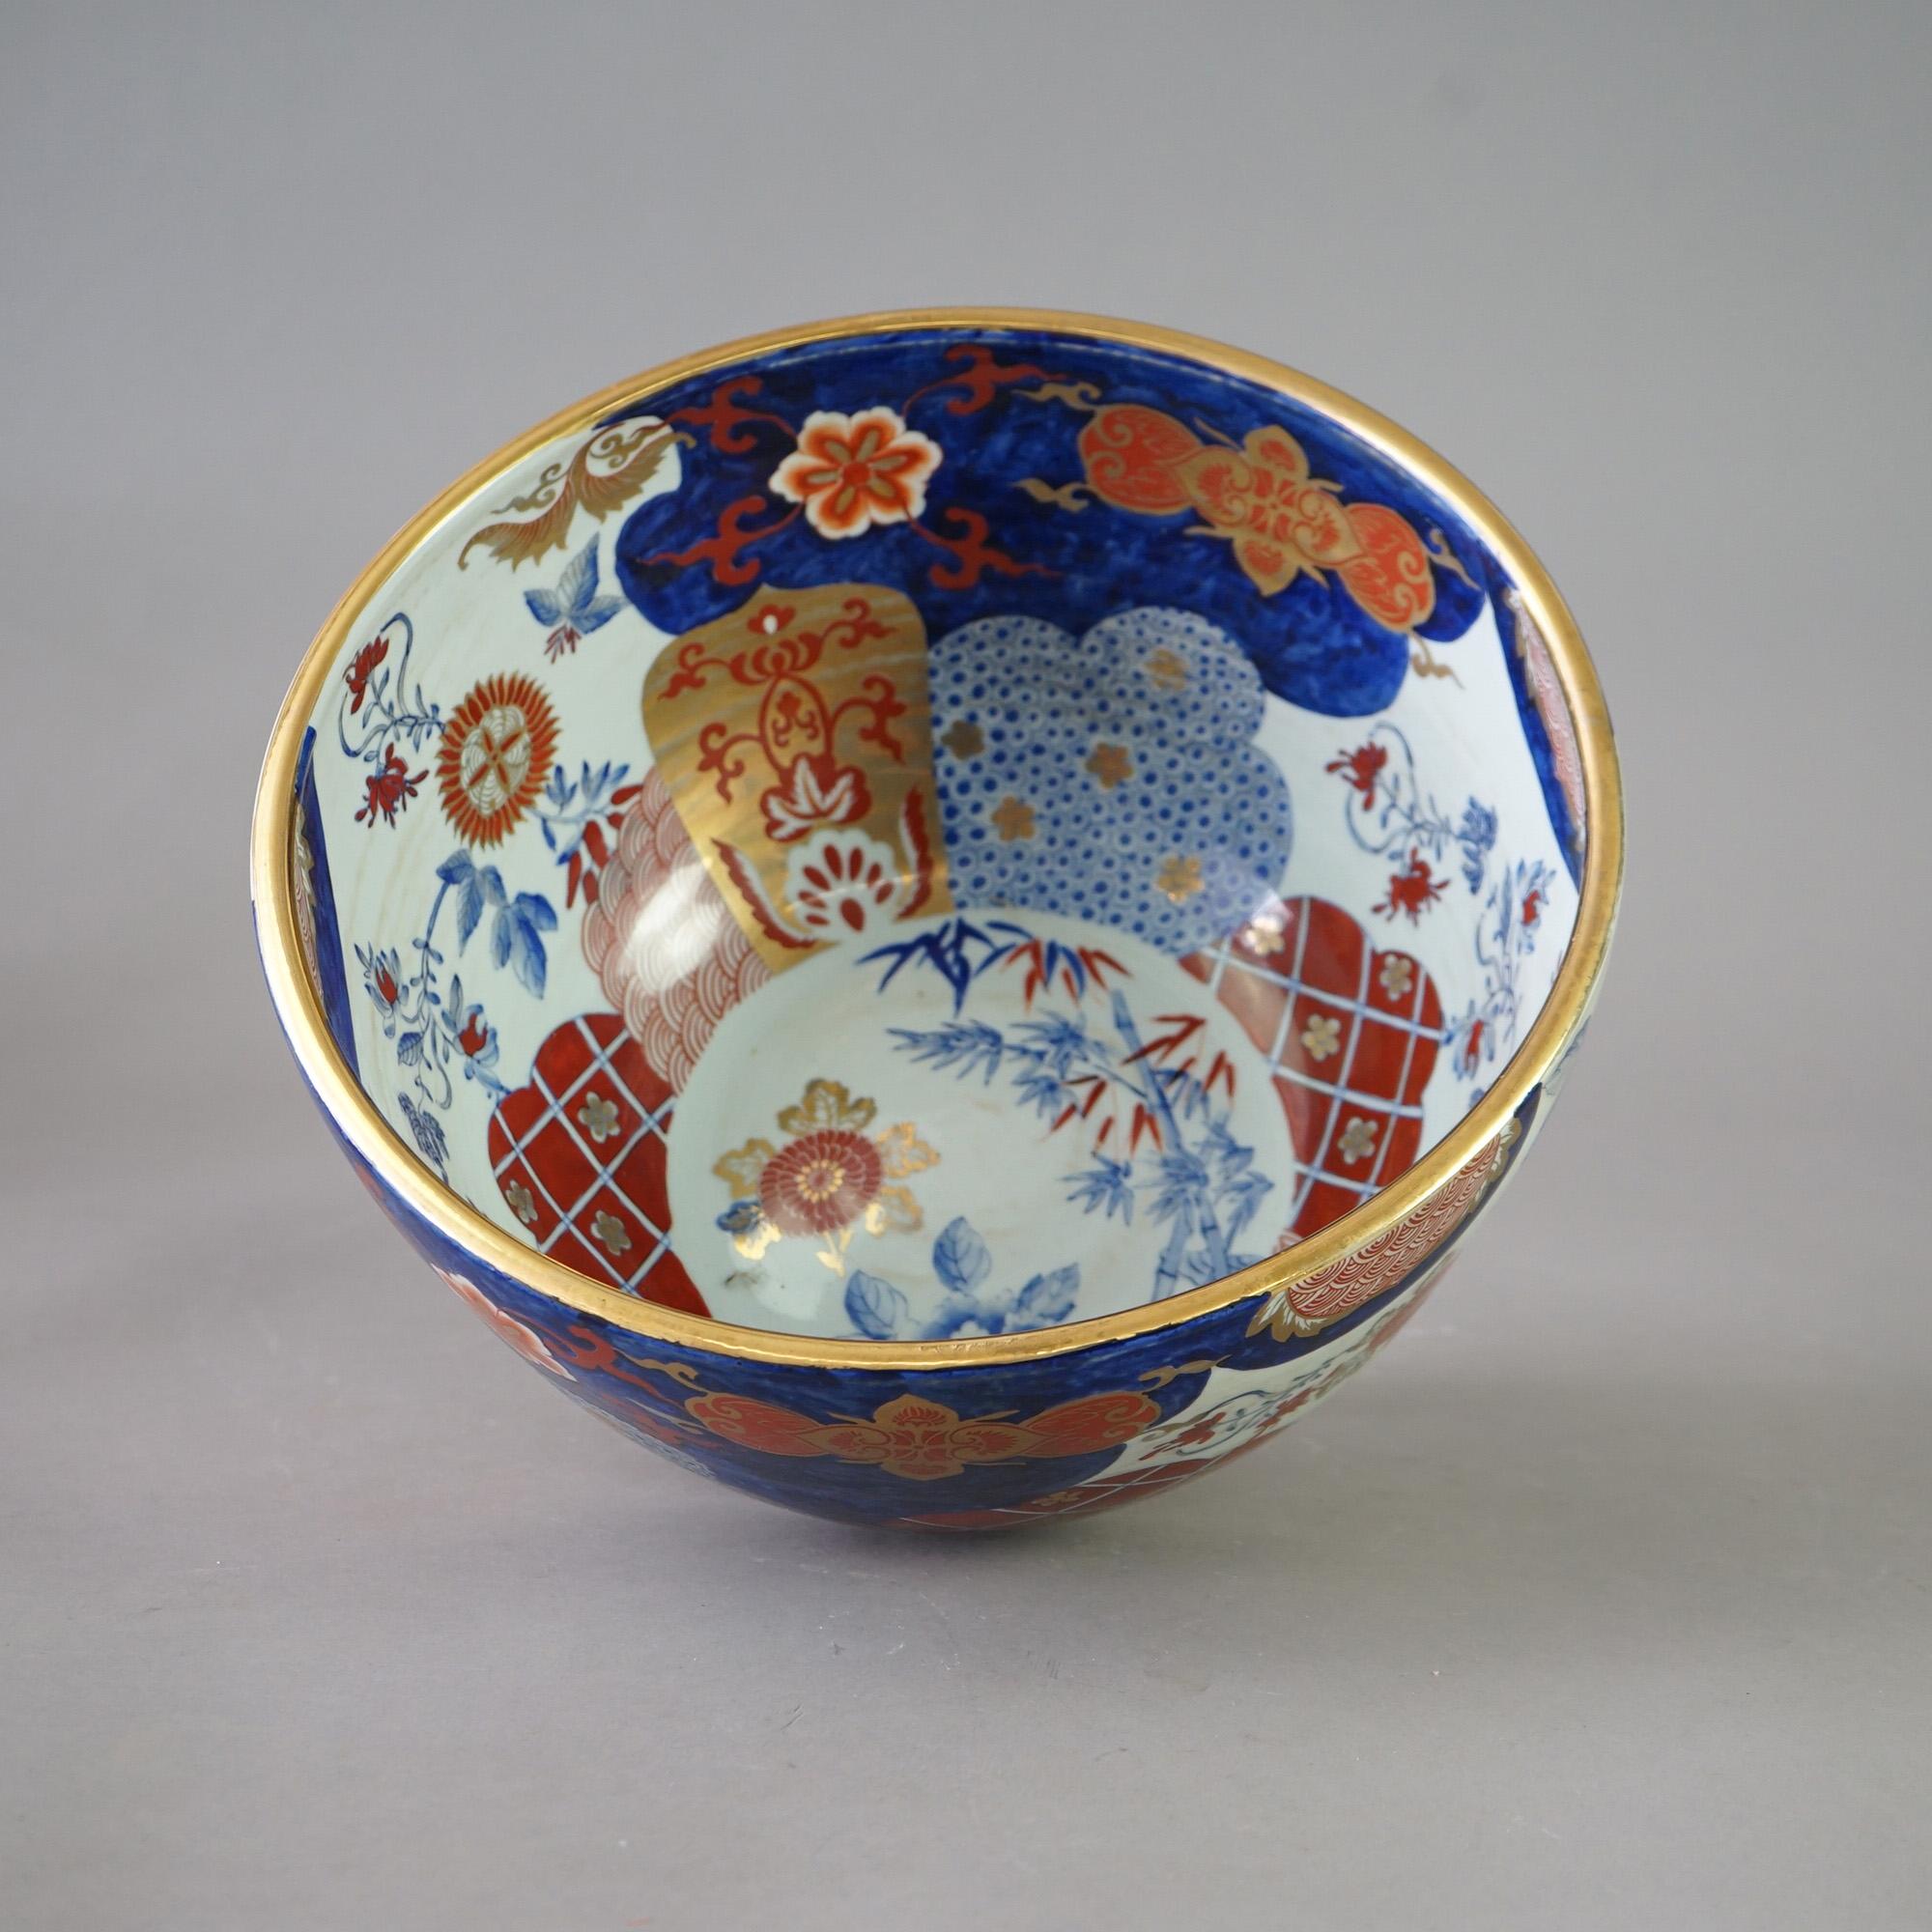 Un ancien bol central chinois Imari surdimensionné en porcelaine avec des éléments de jardin peints à la main et des reflets dorés sur l'ensemble, vers 1920.

Mesures - 7,75 